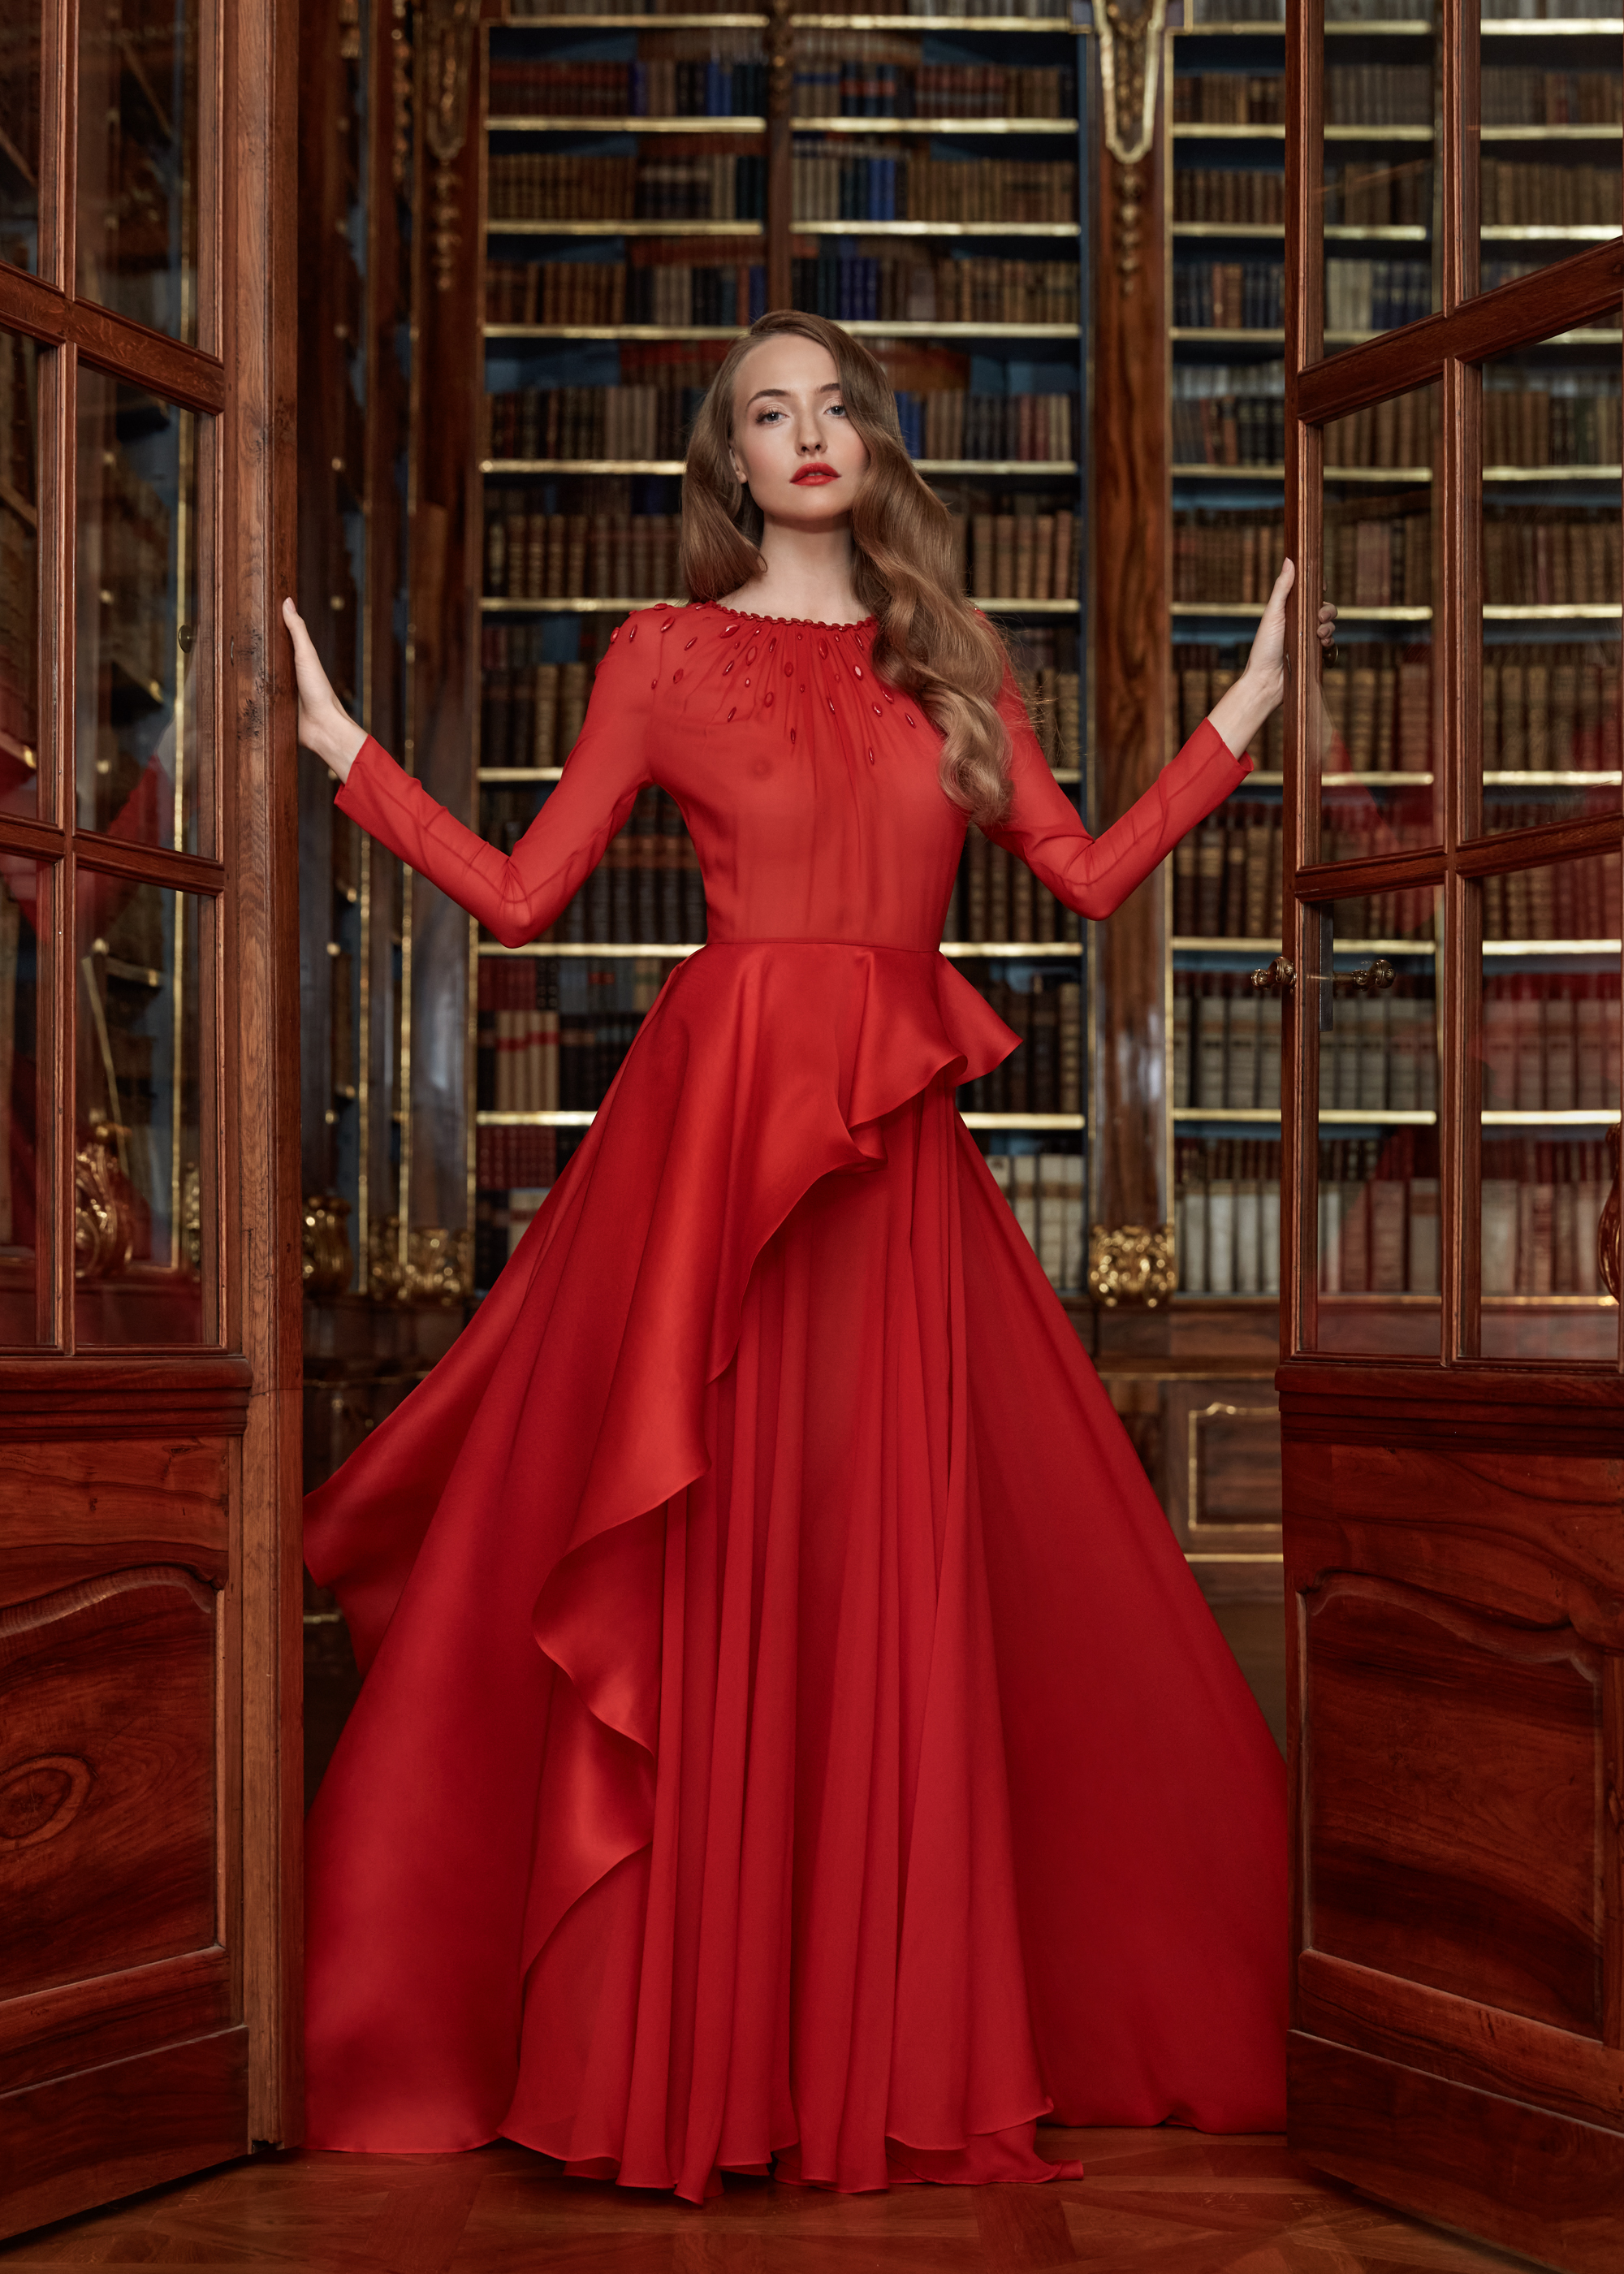 RED #hautecouture #couture #fashion #glamour #moda #dress